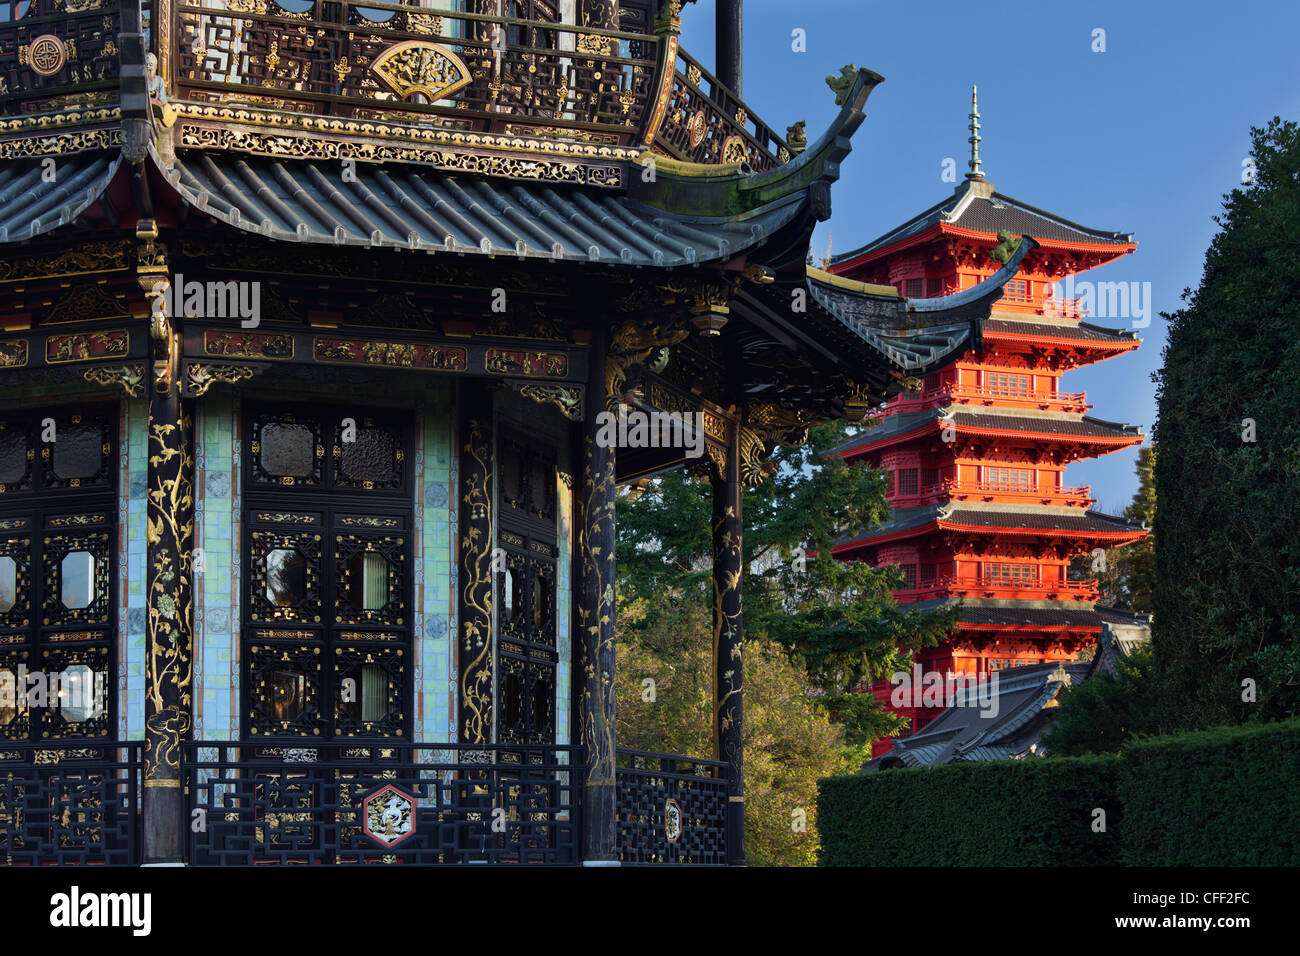 Chinesischer Pavillon und japanischer Turm im Sonnenlicht, Brüssel, Belgien, Europa Stockfoto